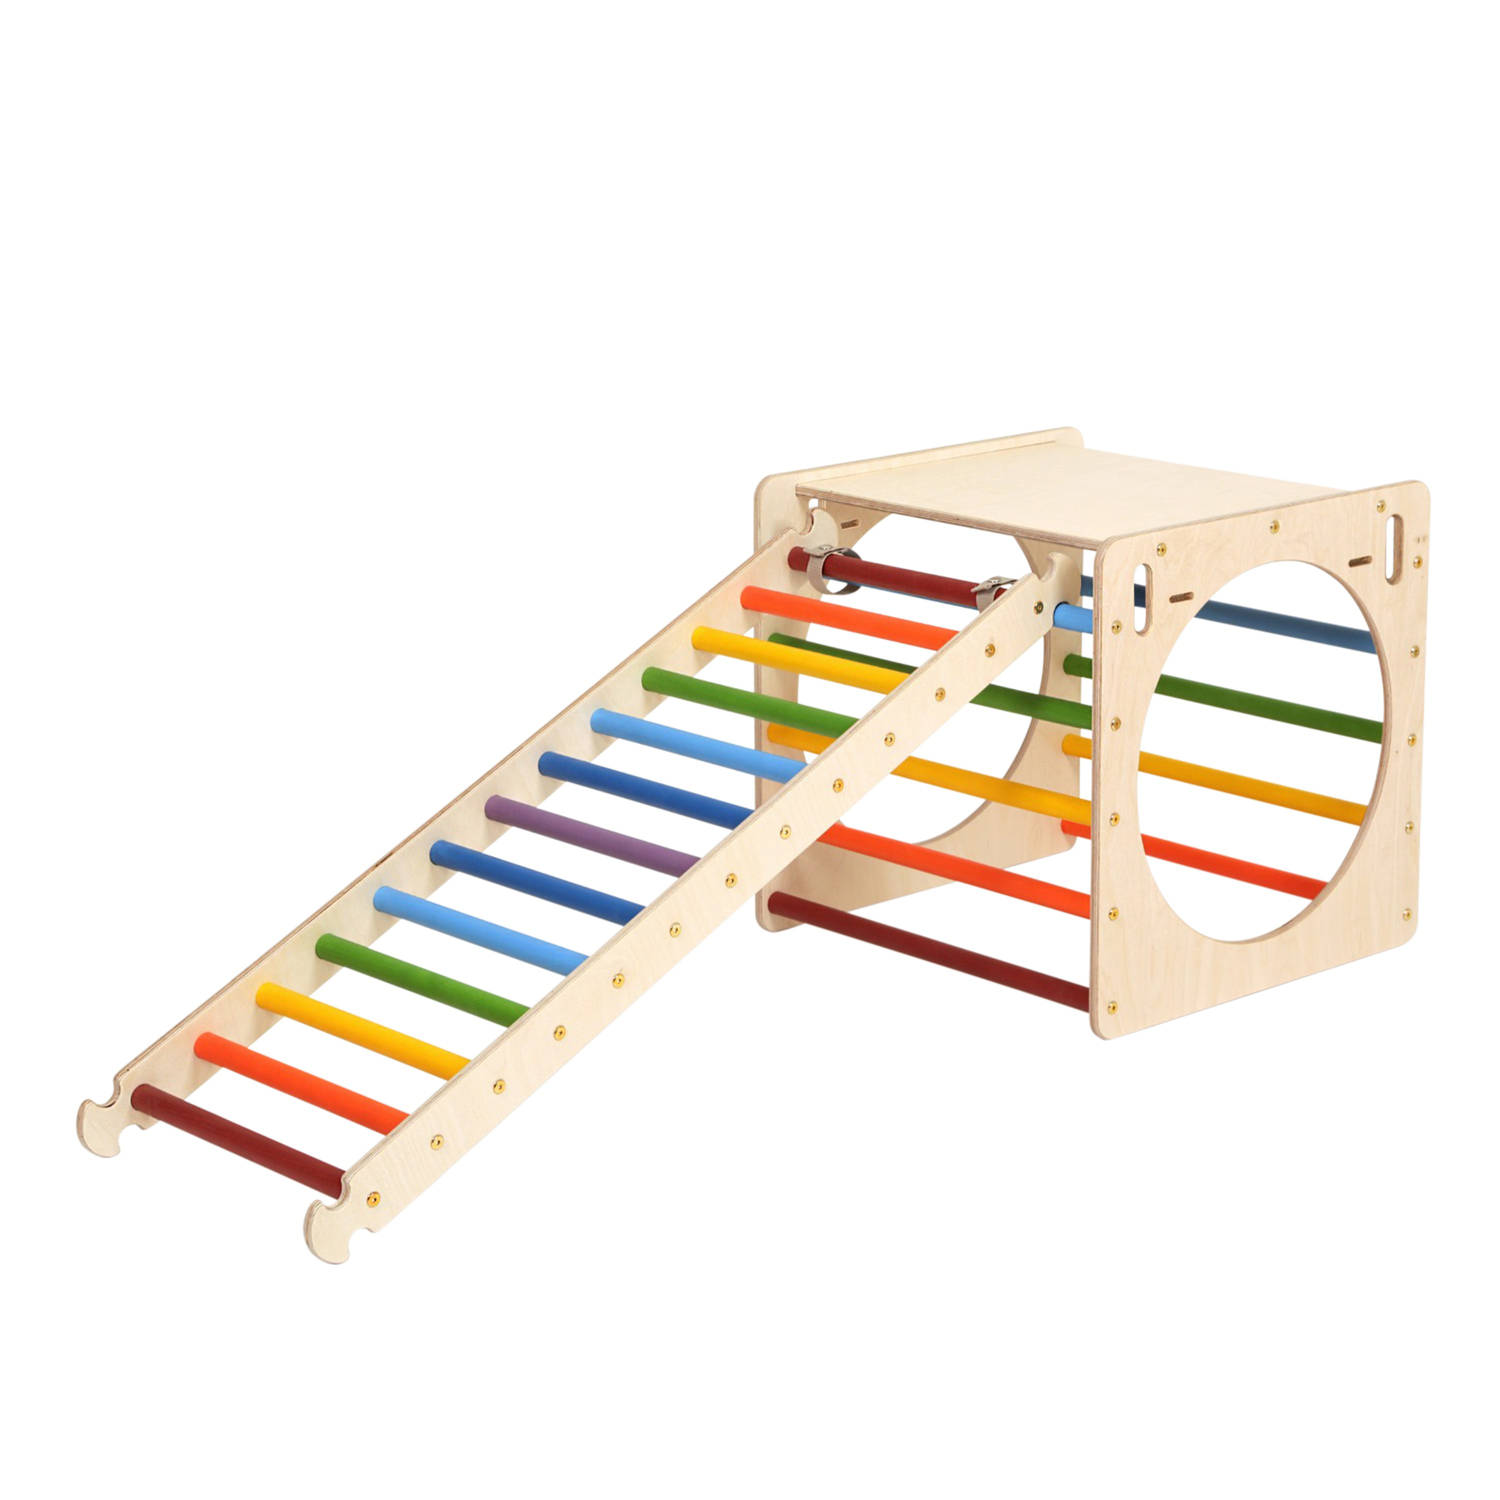 Katehaa Activiteiten Kubus Met Ladder Van Hout In Regenboogkleuren Indoor Klimrek Voor Kinderen